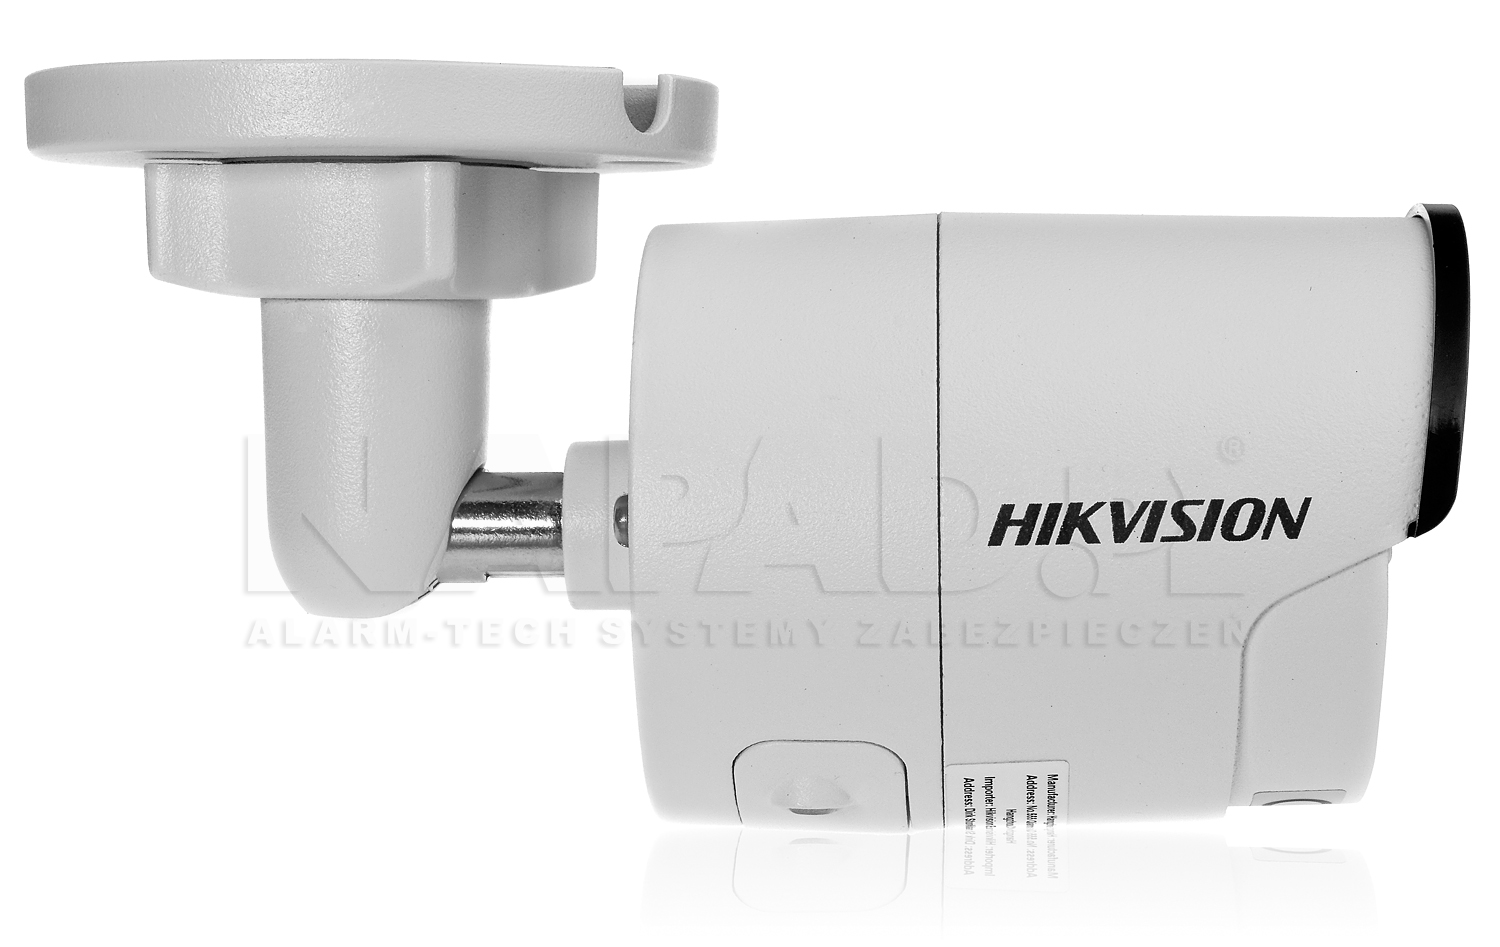 Solidne wykonanie obudowy kamery IP Hikvision.